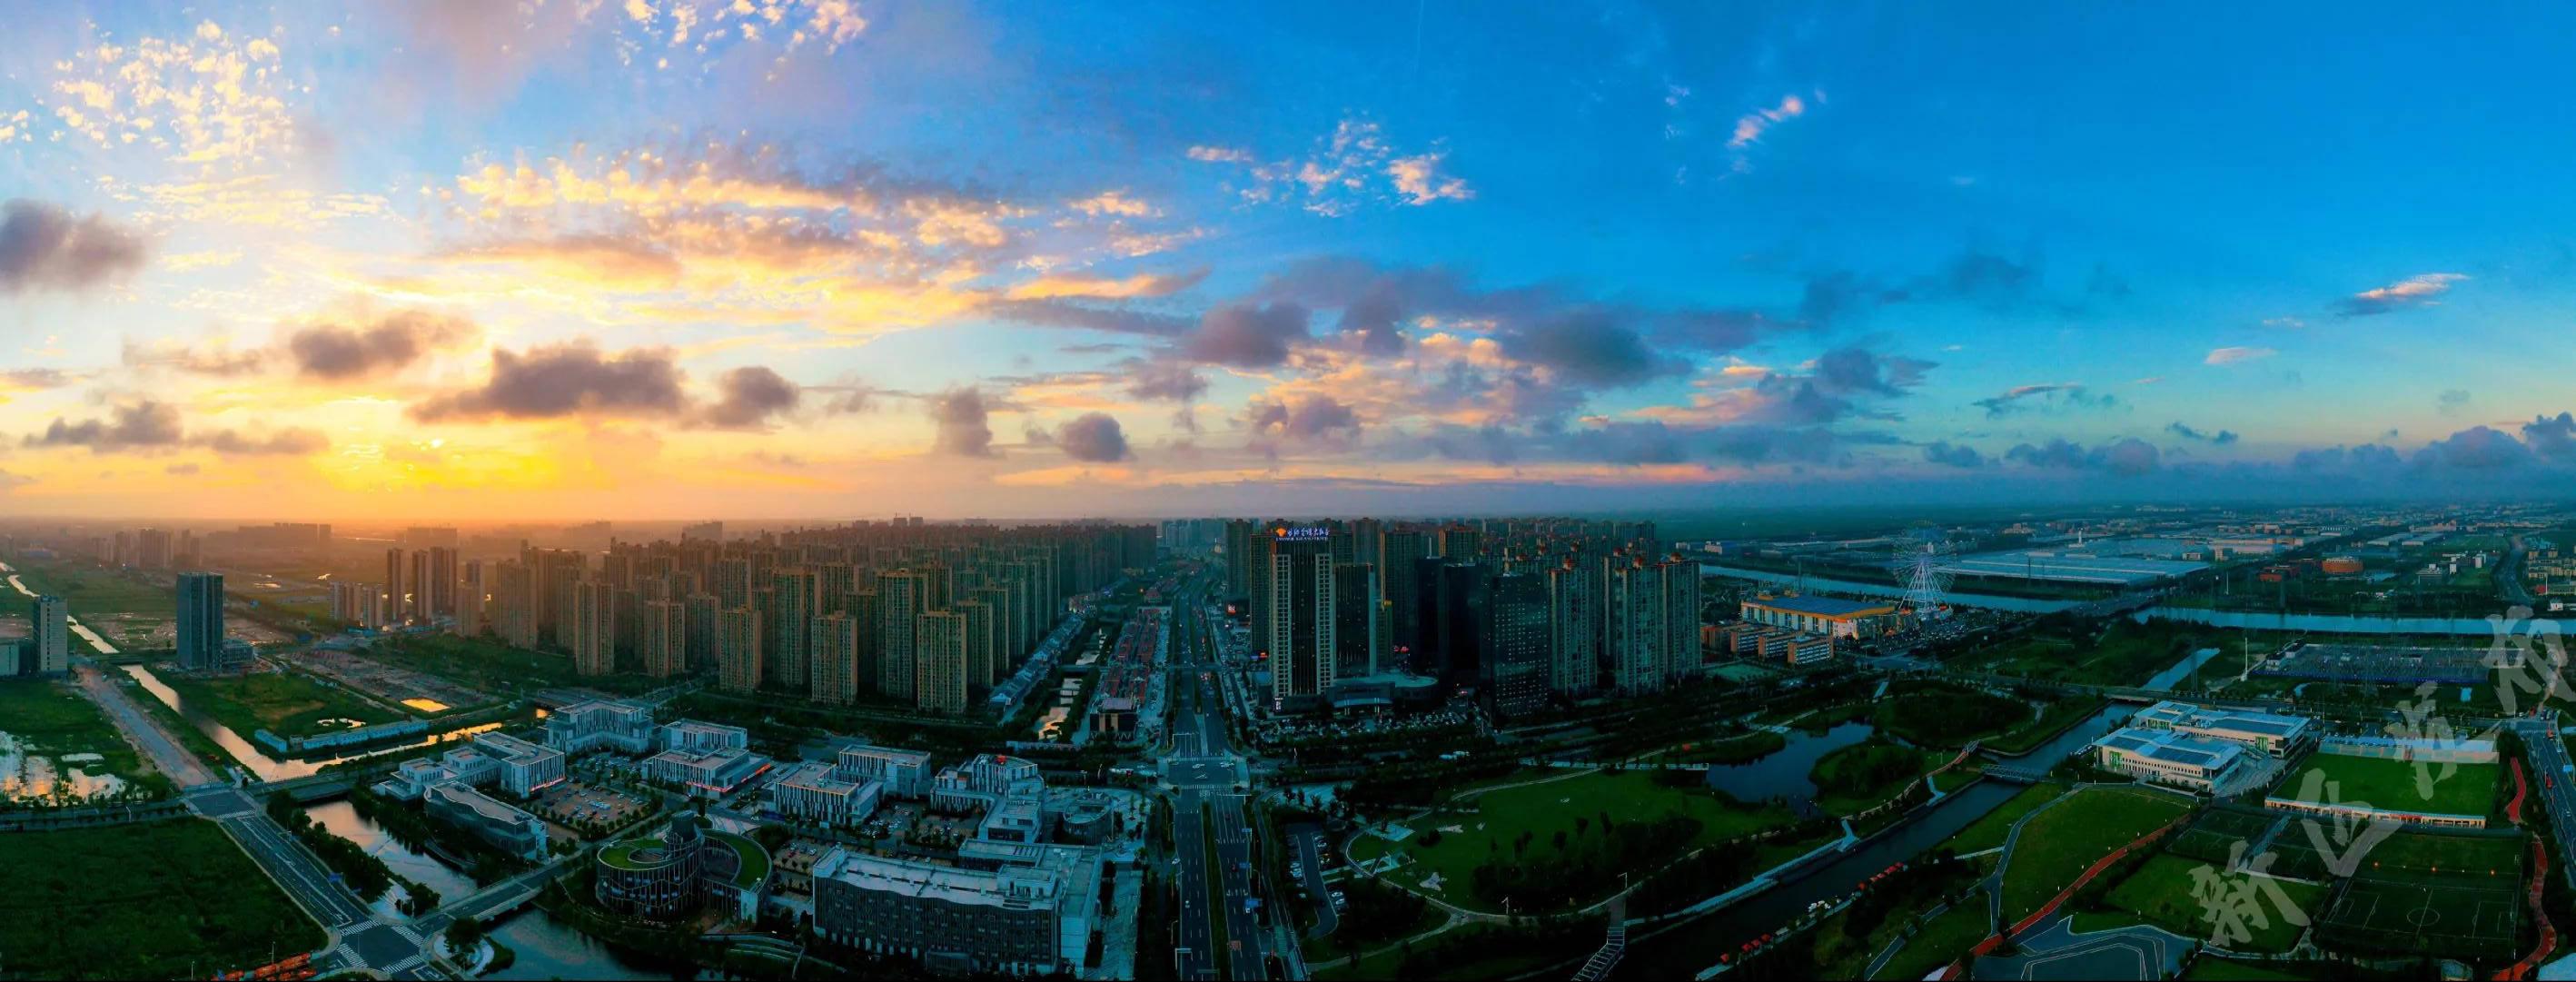 360度全景宁波杭州湾新区，带你凌空俯视这颗大湾区之心